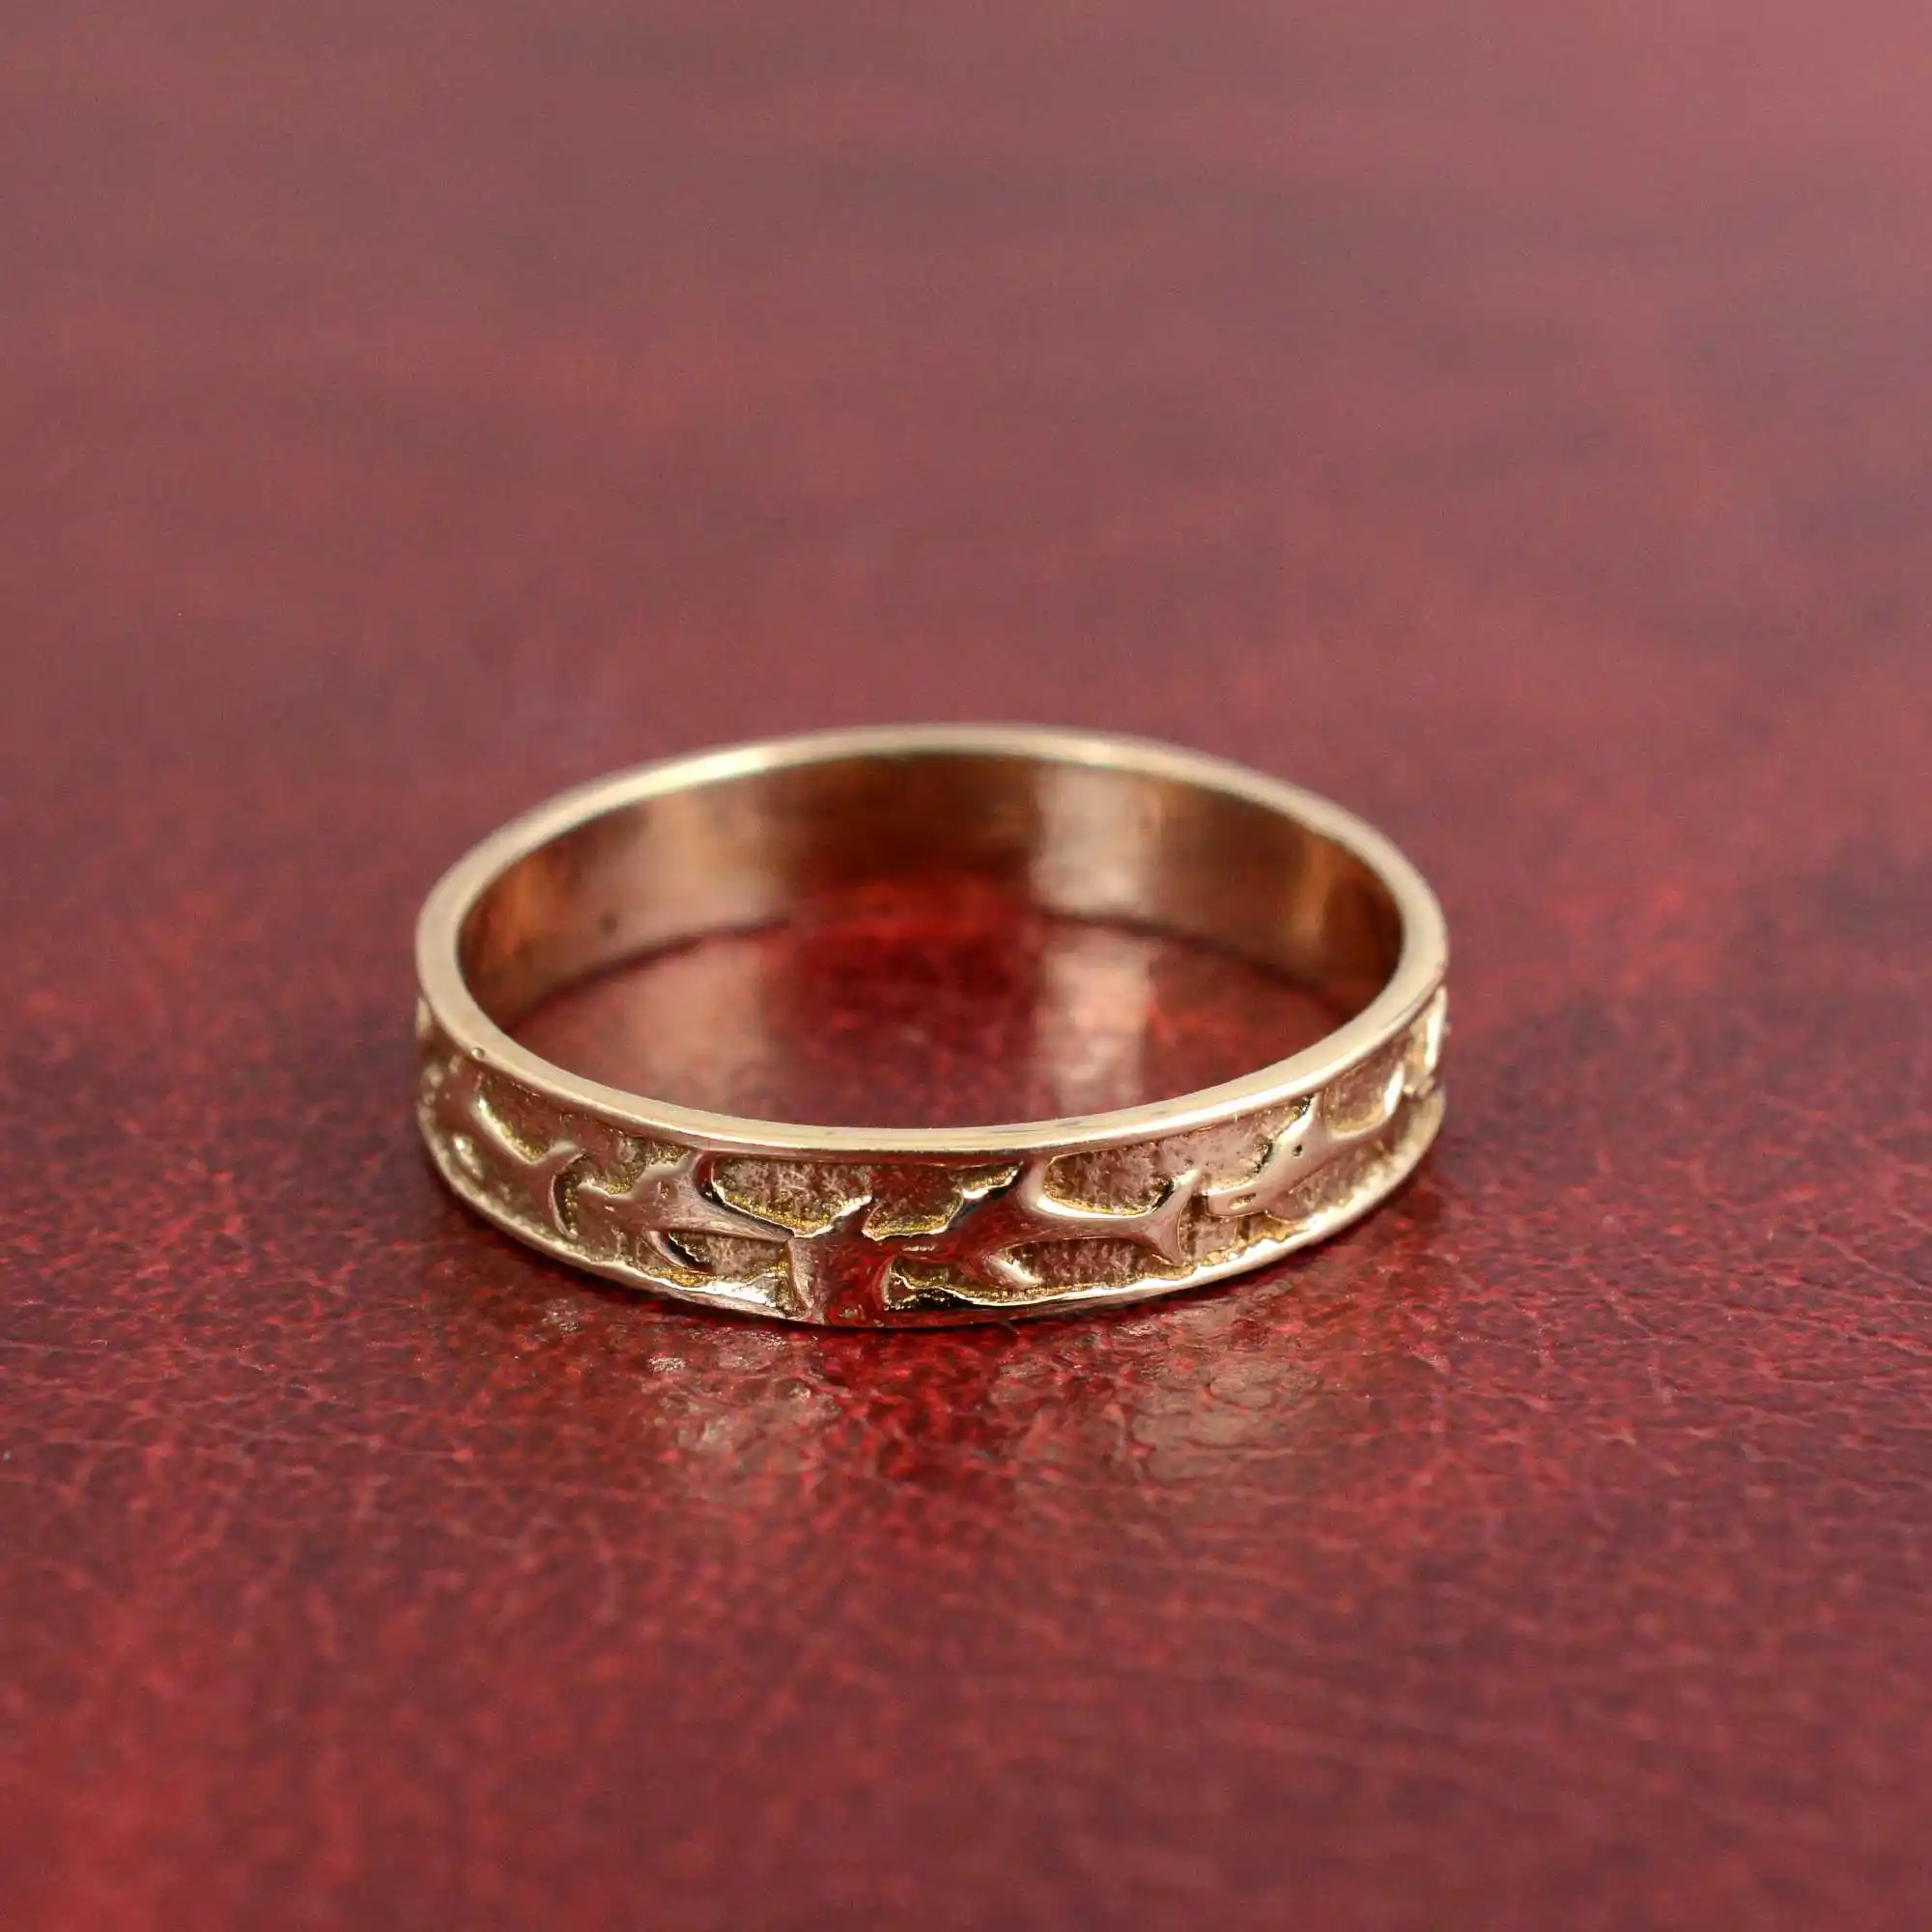 Độc quyền động vật Cá ban nhạc ngón tay cái thiết kế vòng đồ trang sức dễ thương cho cô gái 18K mạ vàng phổ biến unisex kết cấu đồ trang sức